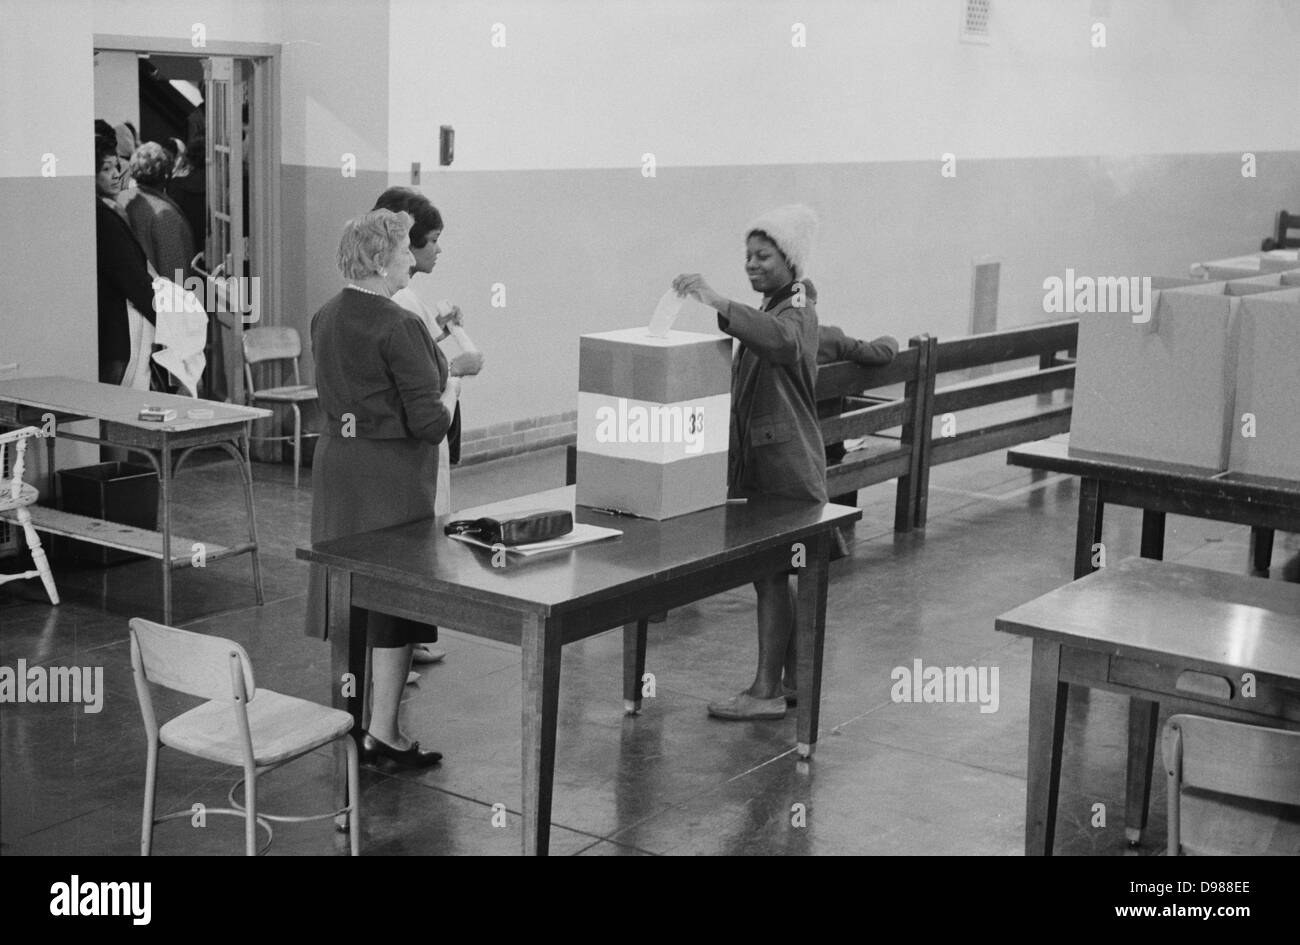 Junge afrikanische amerikanische Frau, die ihre Stimmabgabe in einer Wahlurne auf Wahllokale in der Cardoza High School Building, Washington. DC, 3. Mai 1964. Fotograf: Marion S Trikosko. Stockfoto